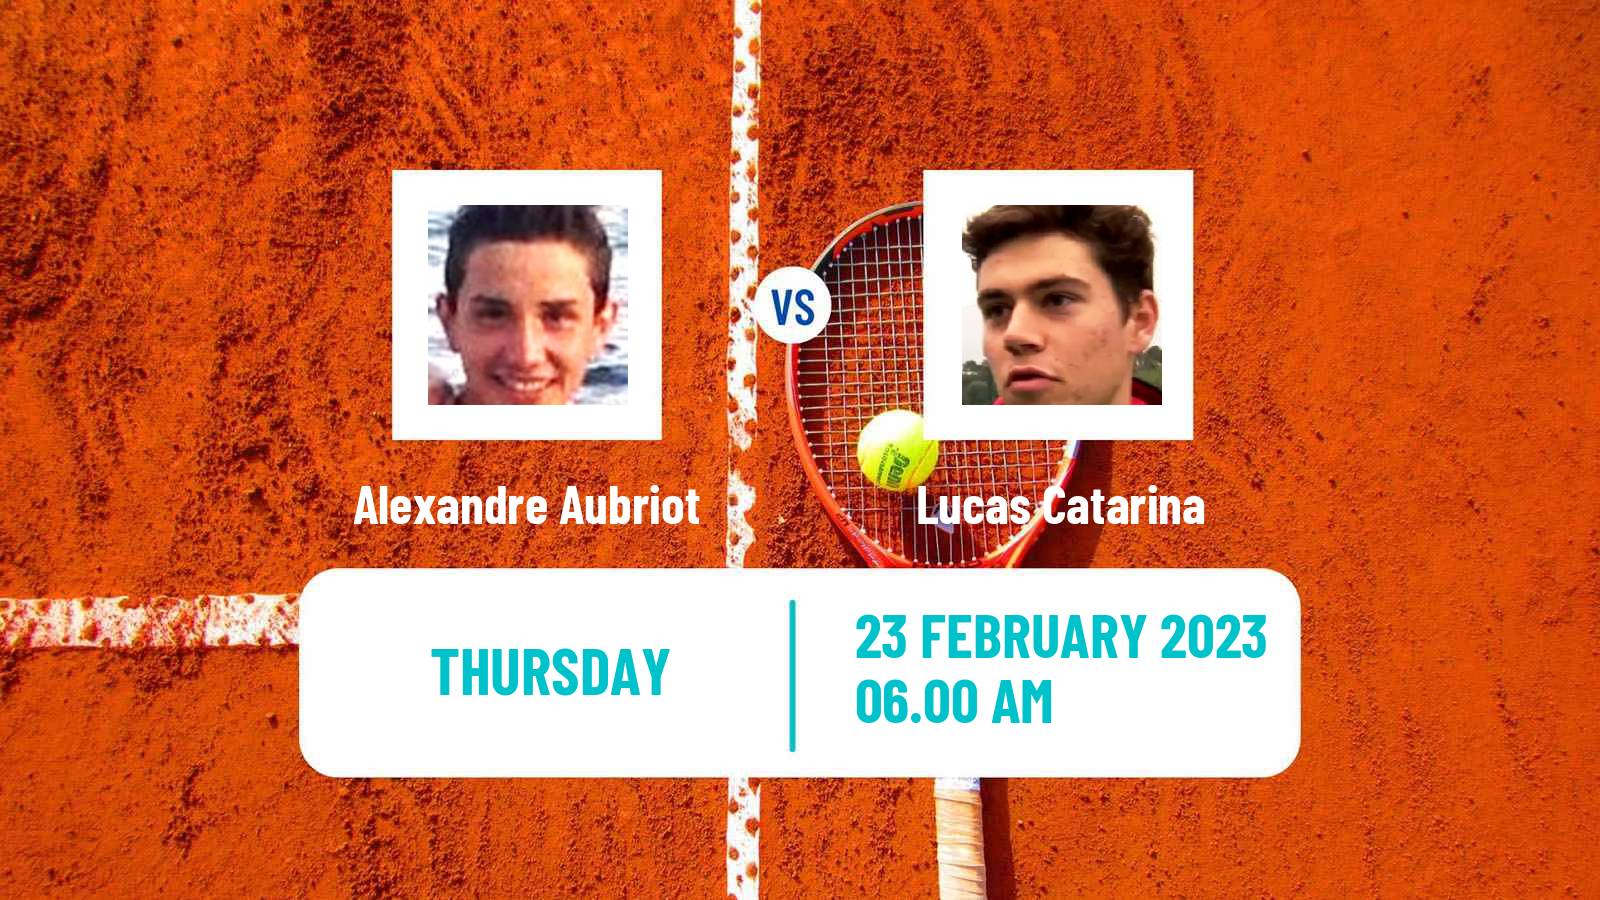 Tennis ITF Tournaments Alexandre Aubriot - Lucas Catarina